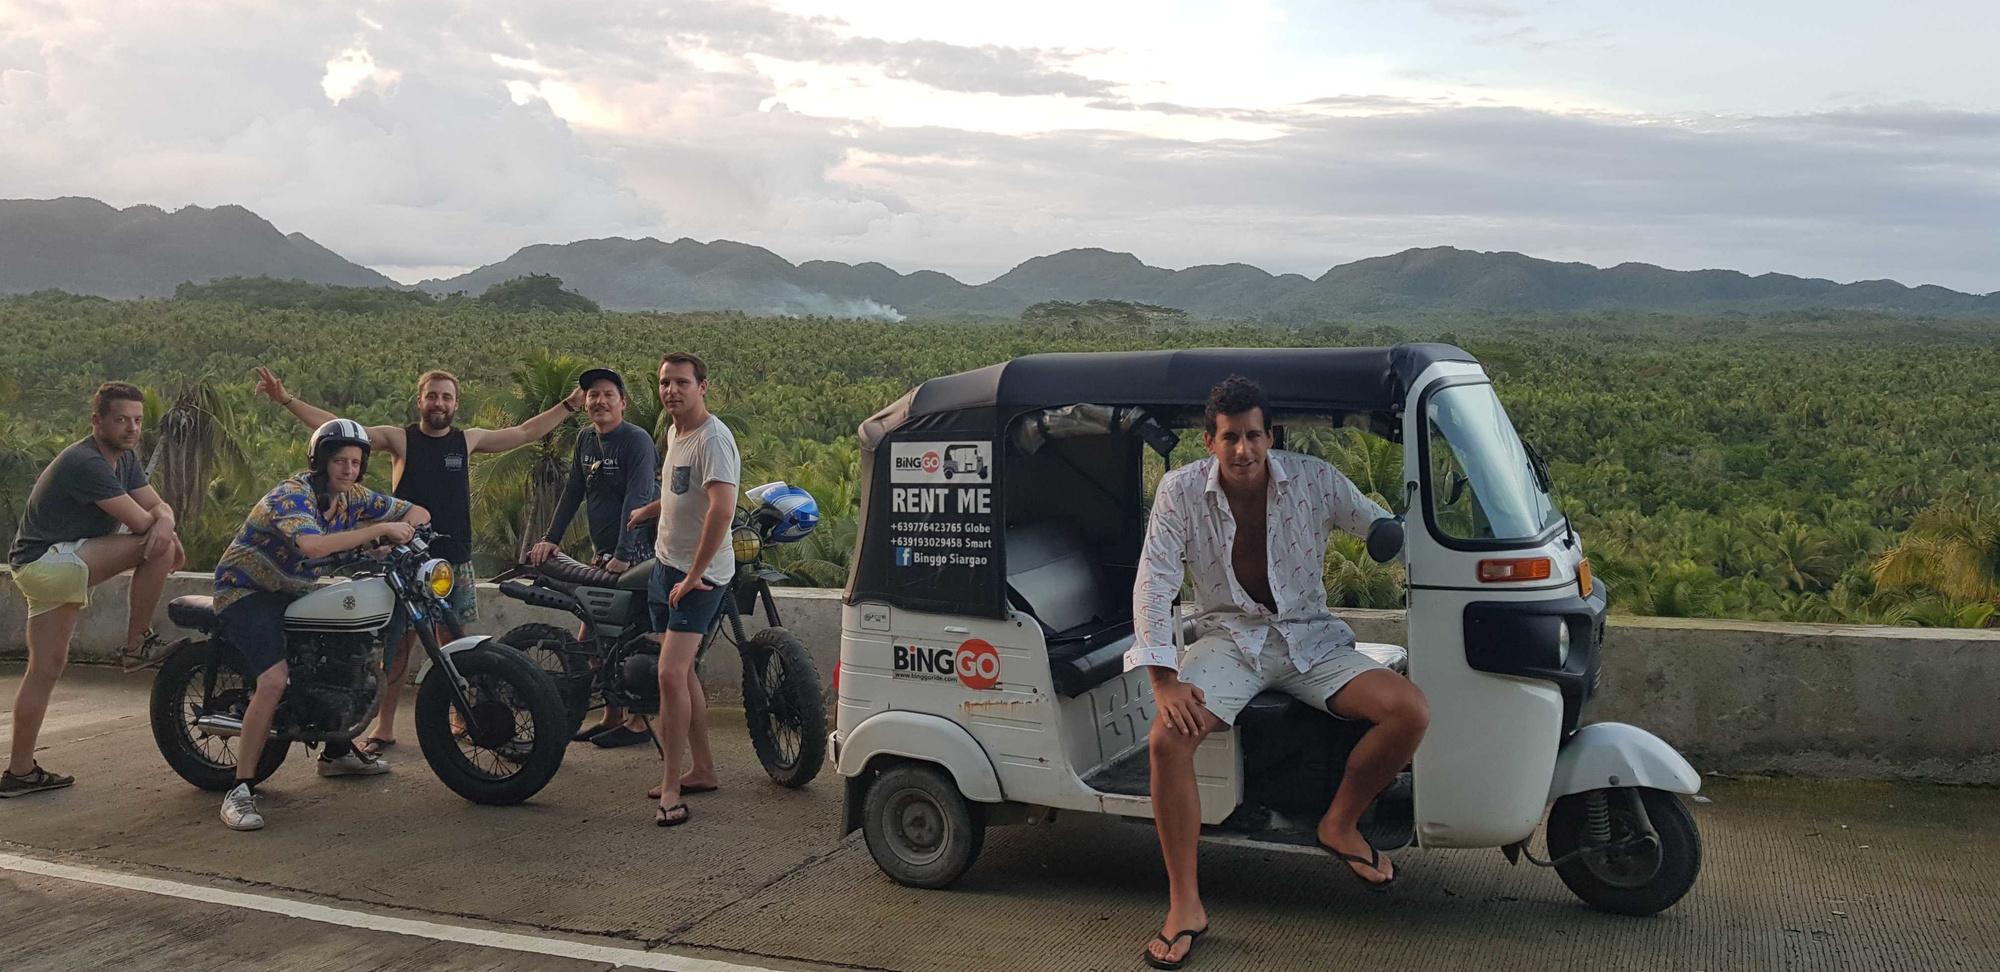 Een recente prospectie voor een nieuwe tuktuk-trip. Charles leunt op de tuktuk, Simon zit op de moto.